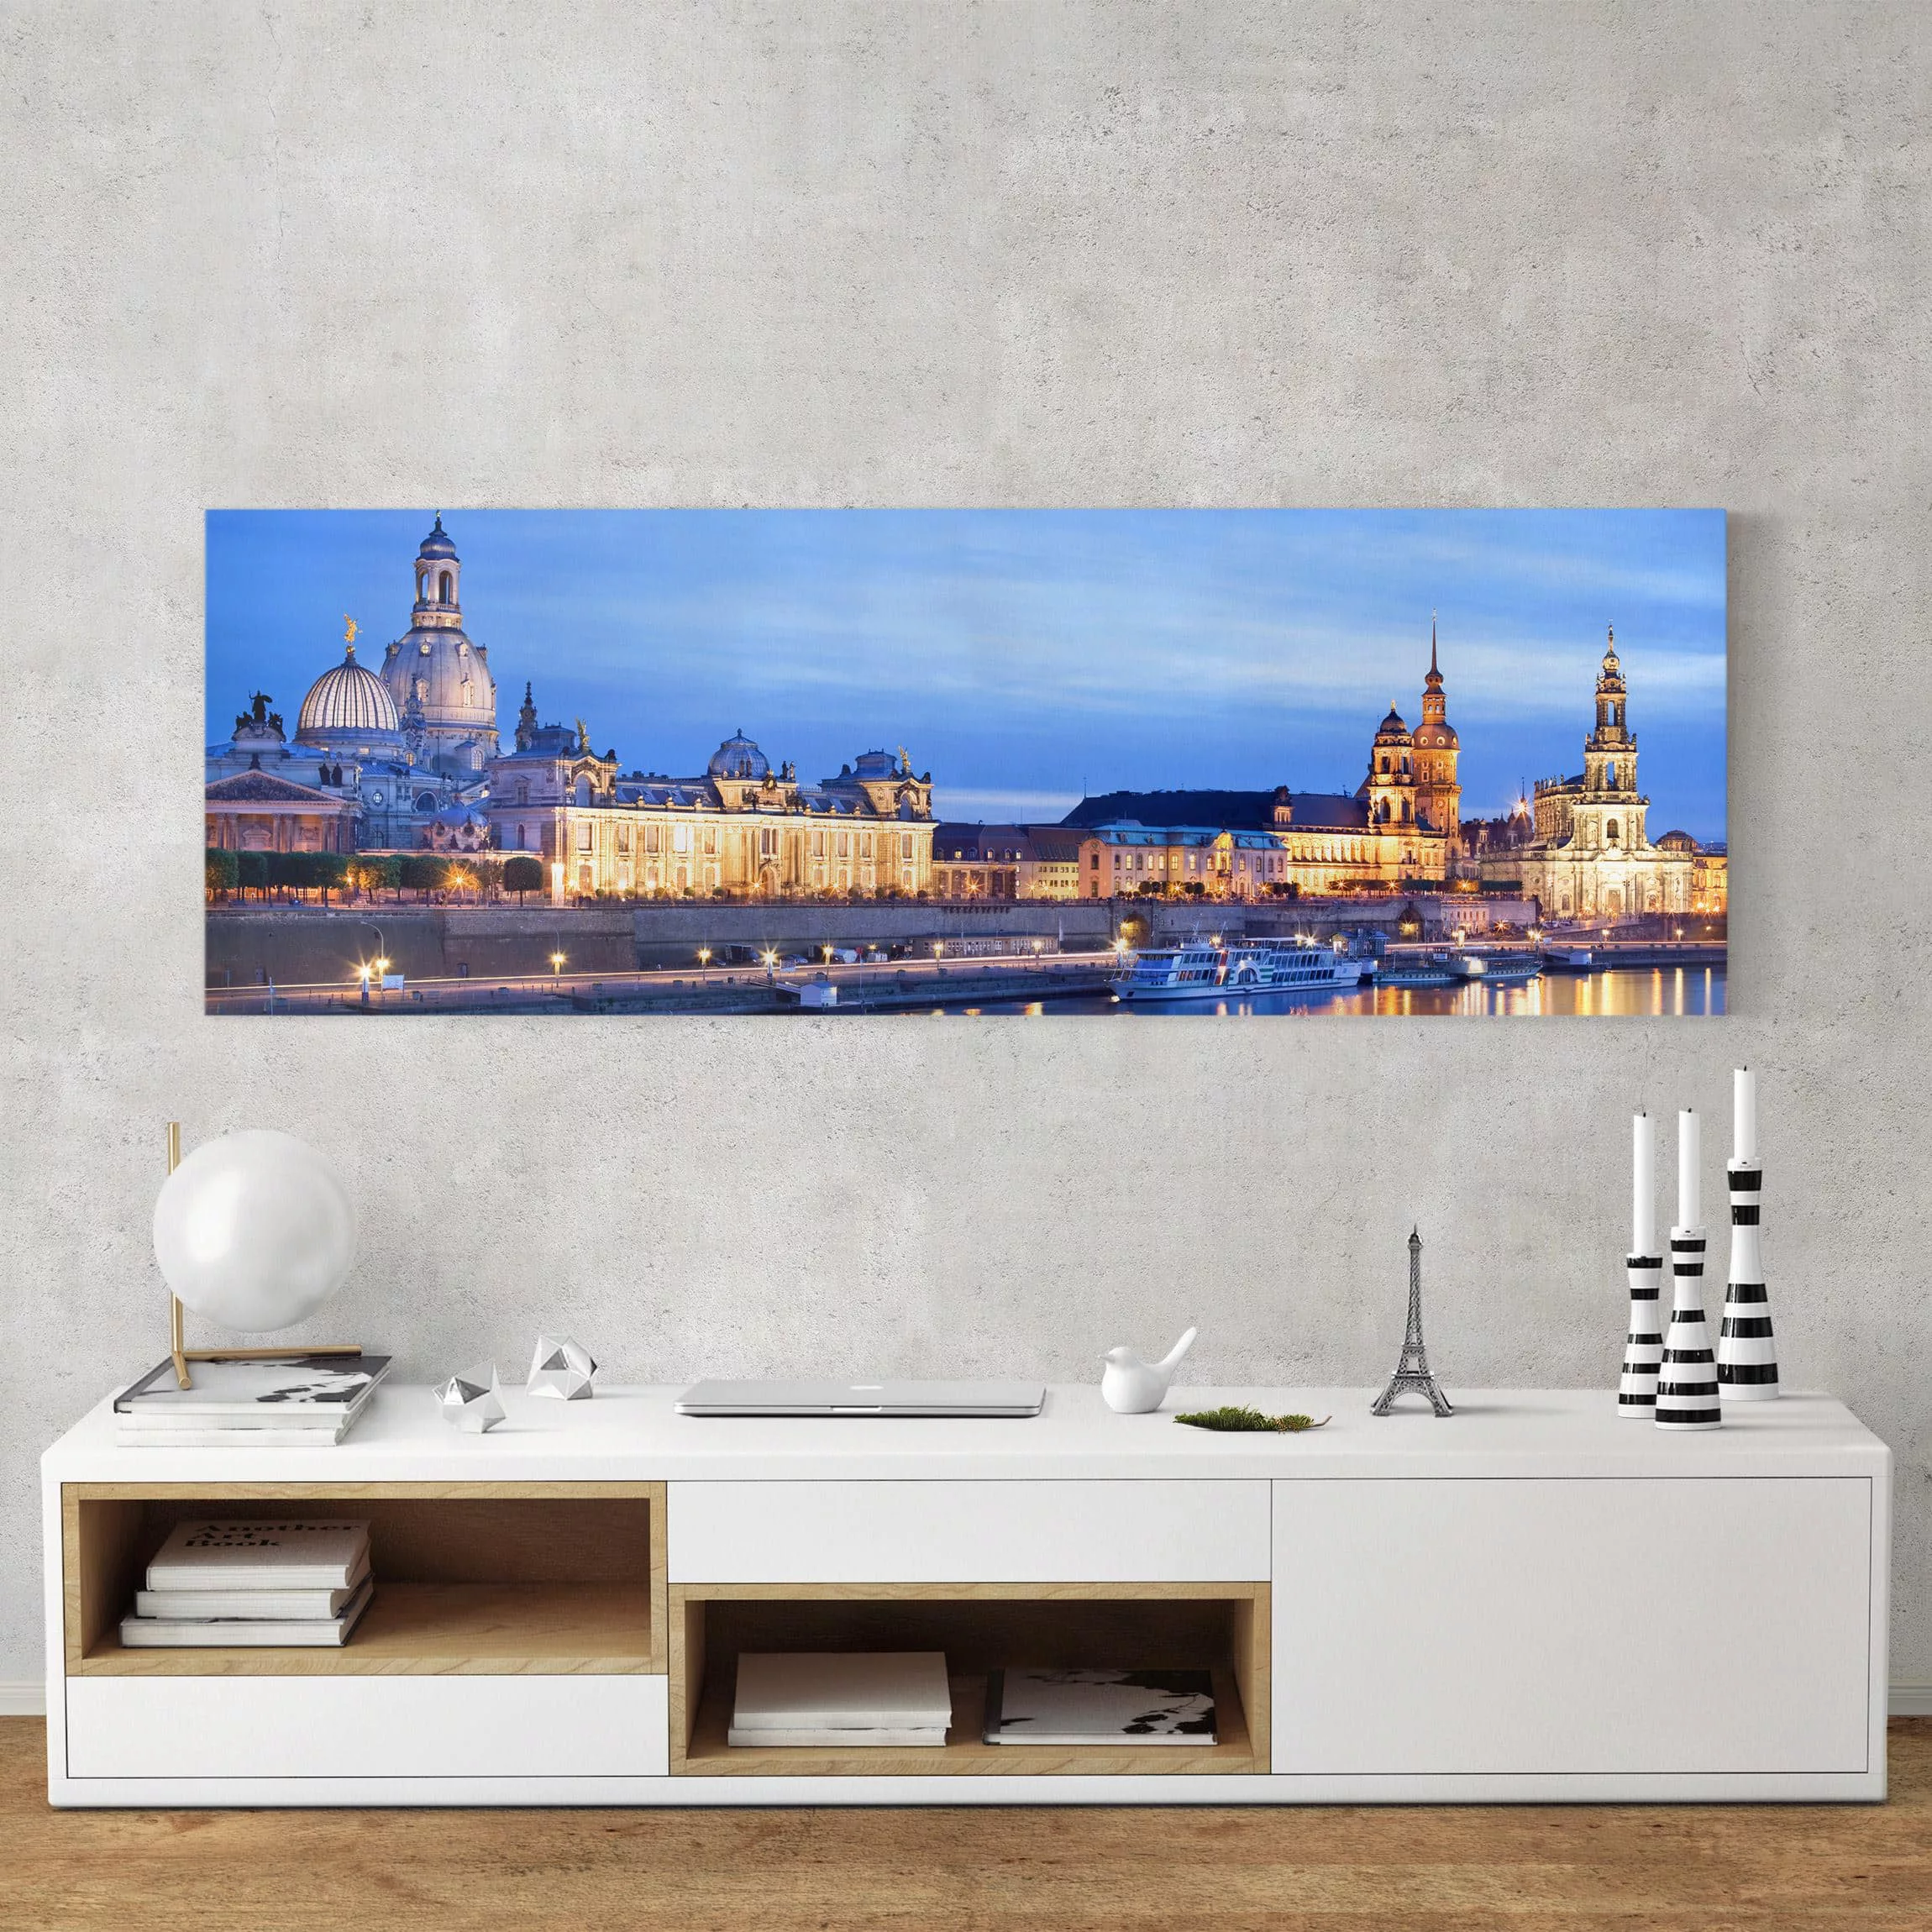 Leinwandbild Architektur & Skyline - Panorama Canaletto-Blick bei Nacht günstig online kaufen